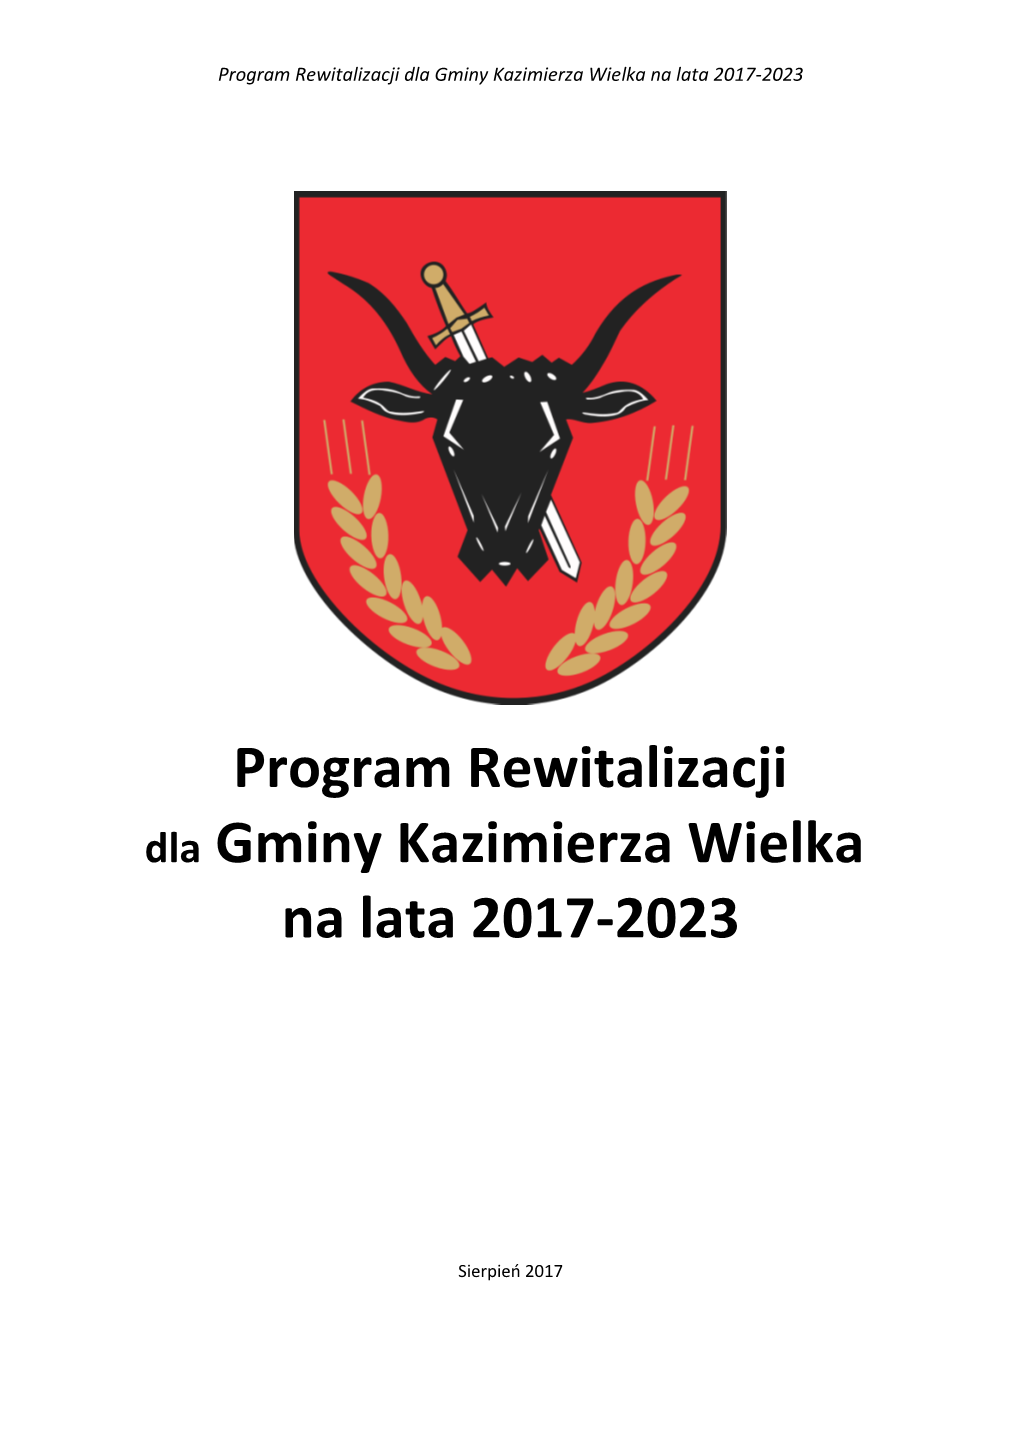 Program Rewitalizacji Dla Gminy Kazimierza Wielka Na Lata 2017-2023